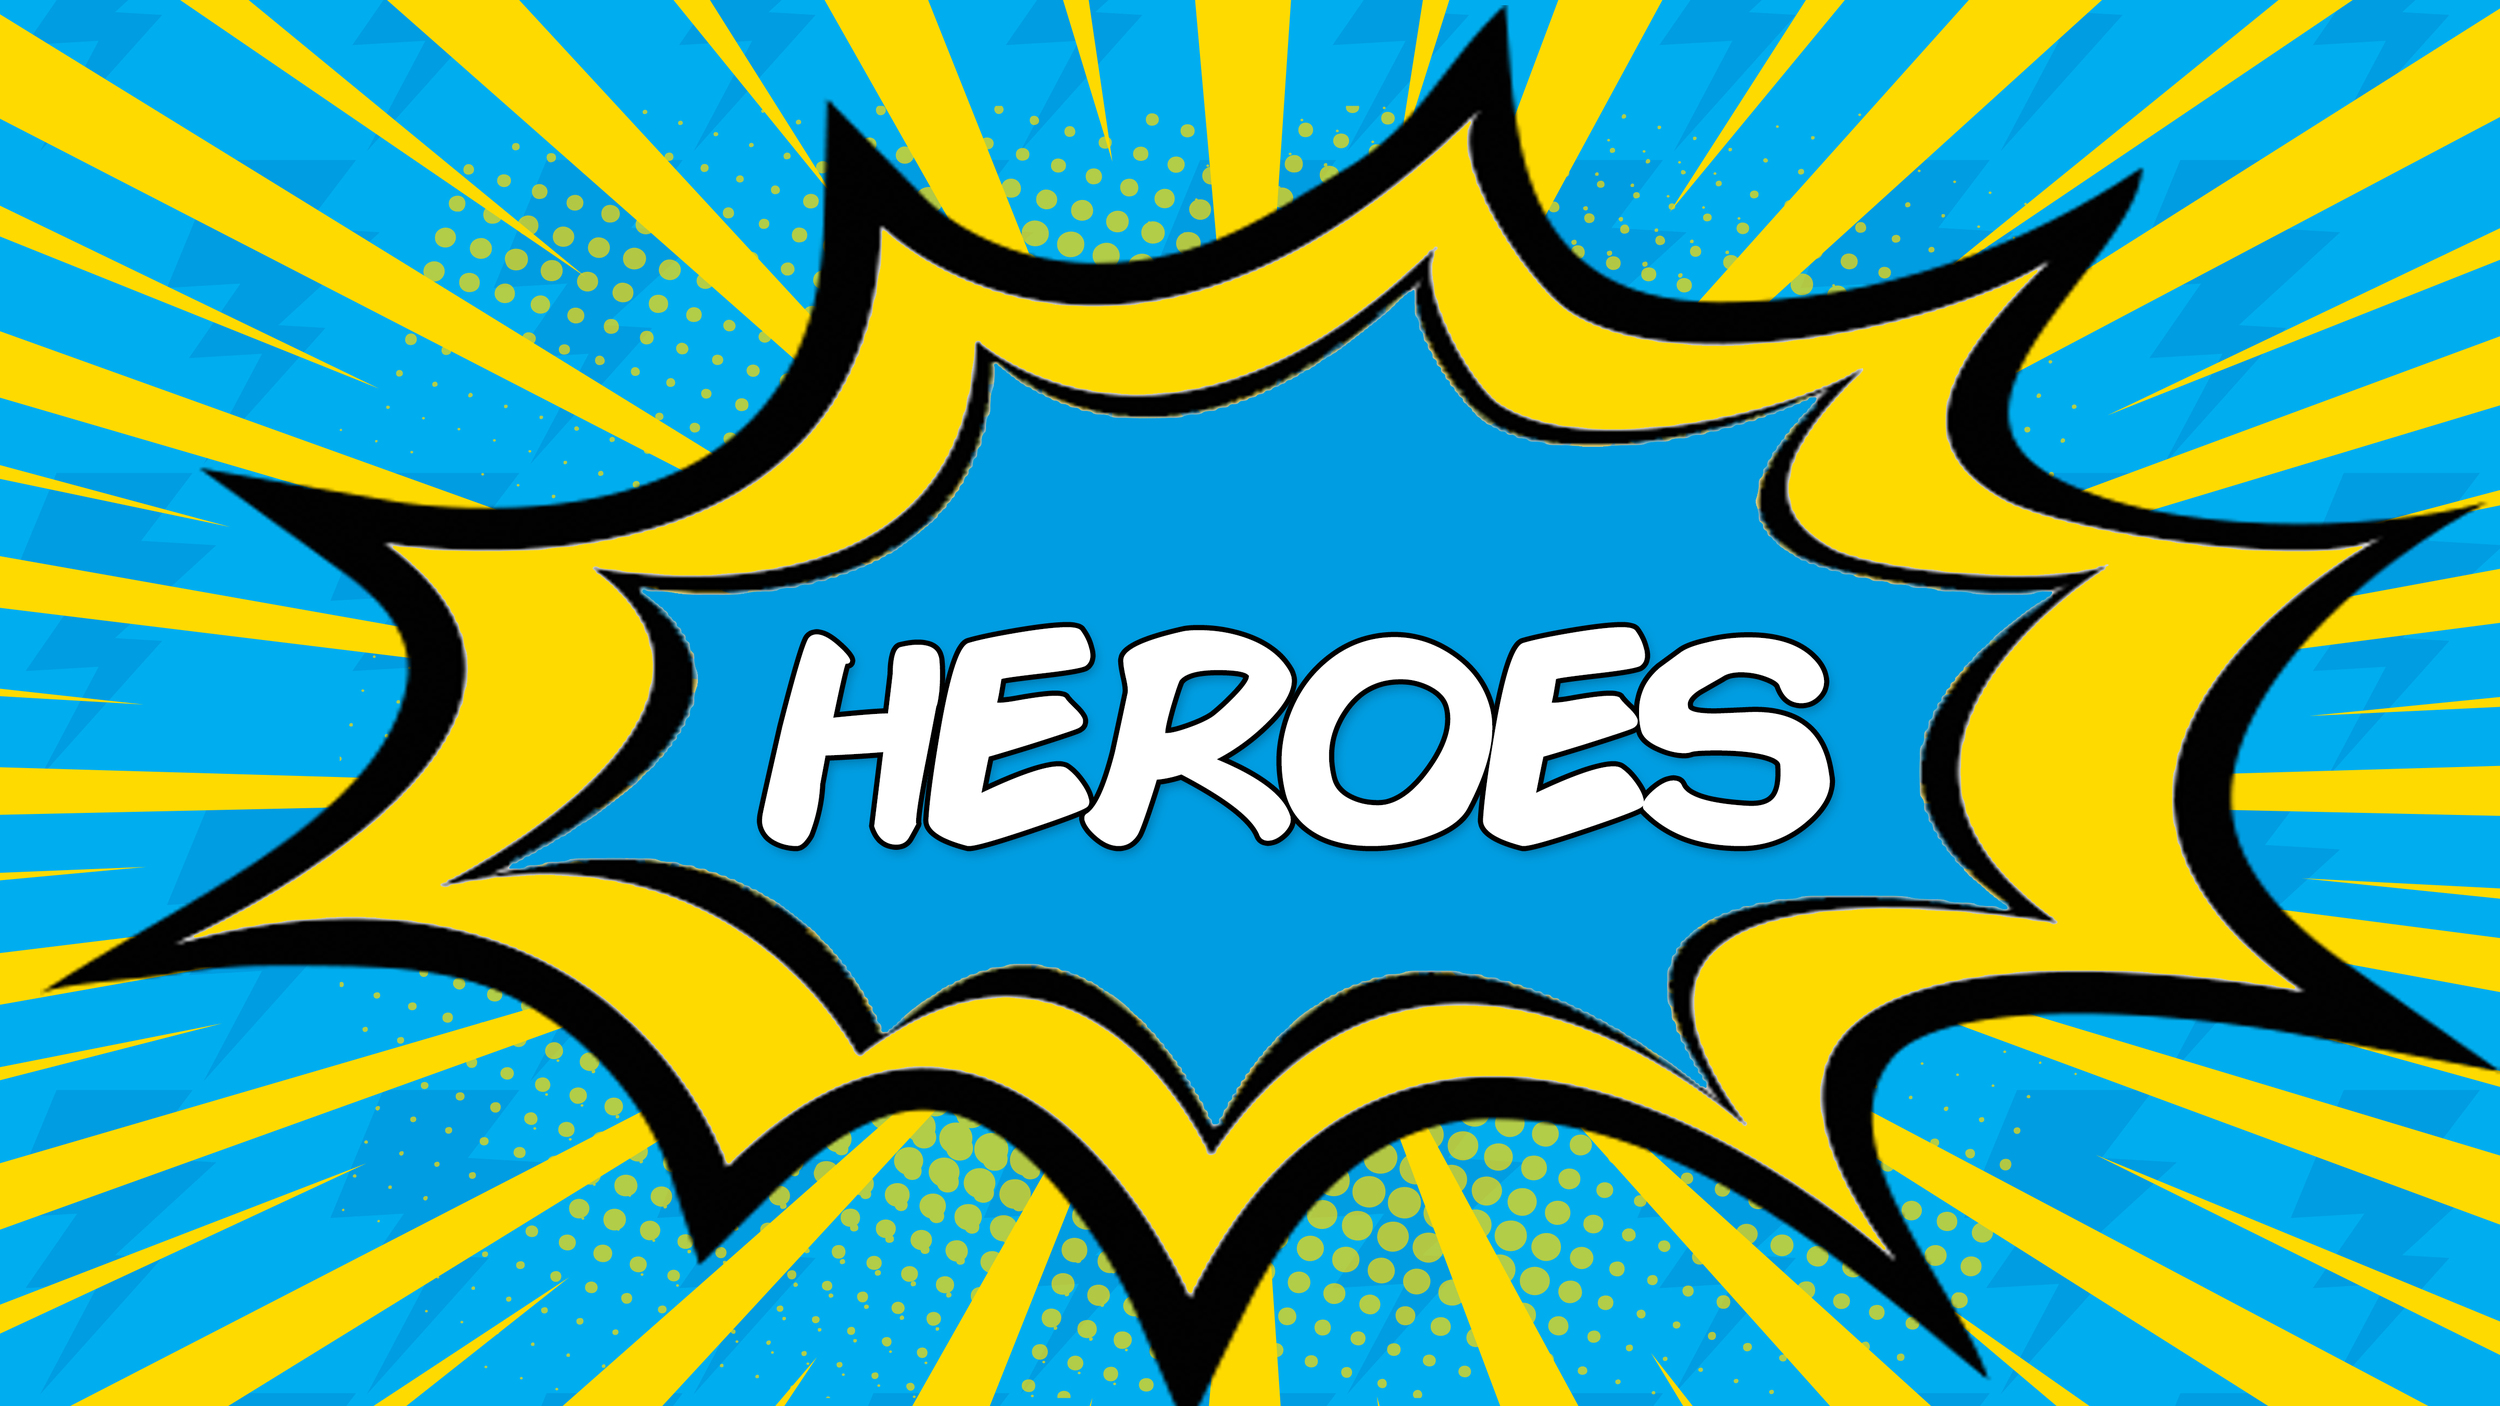 Heroes_series_title.jpg